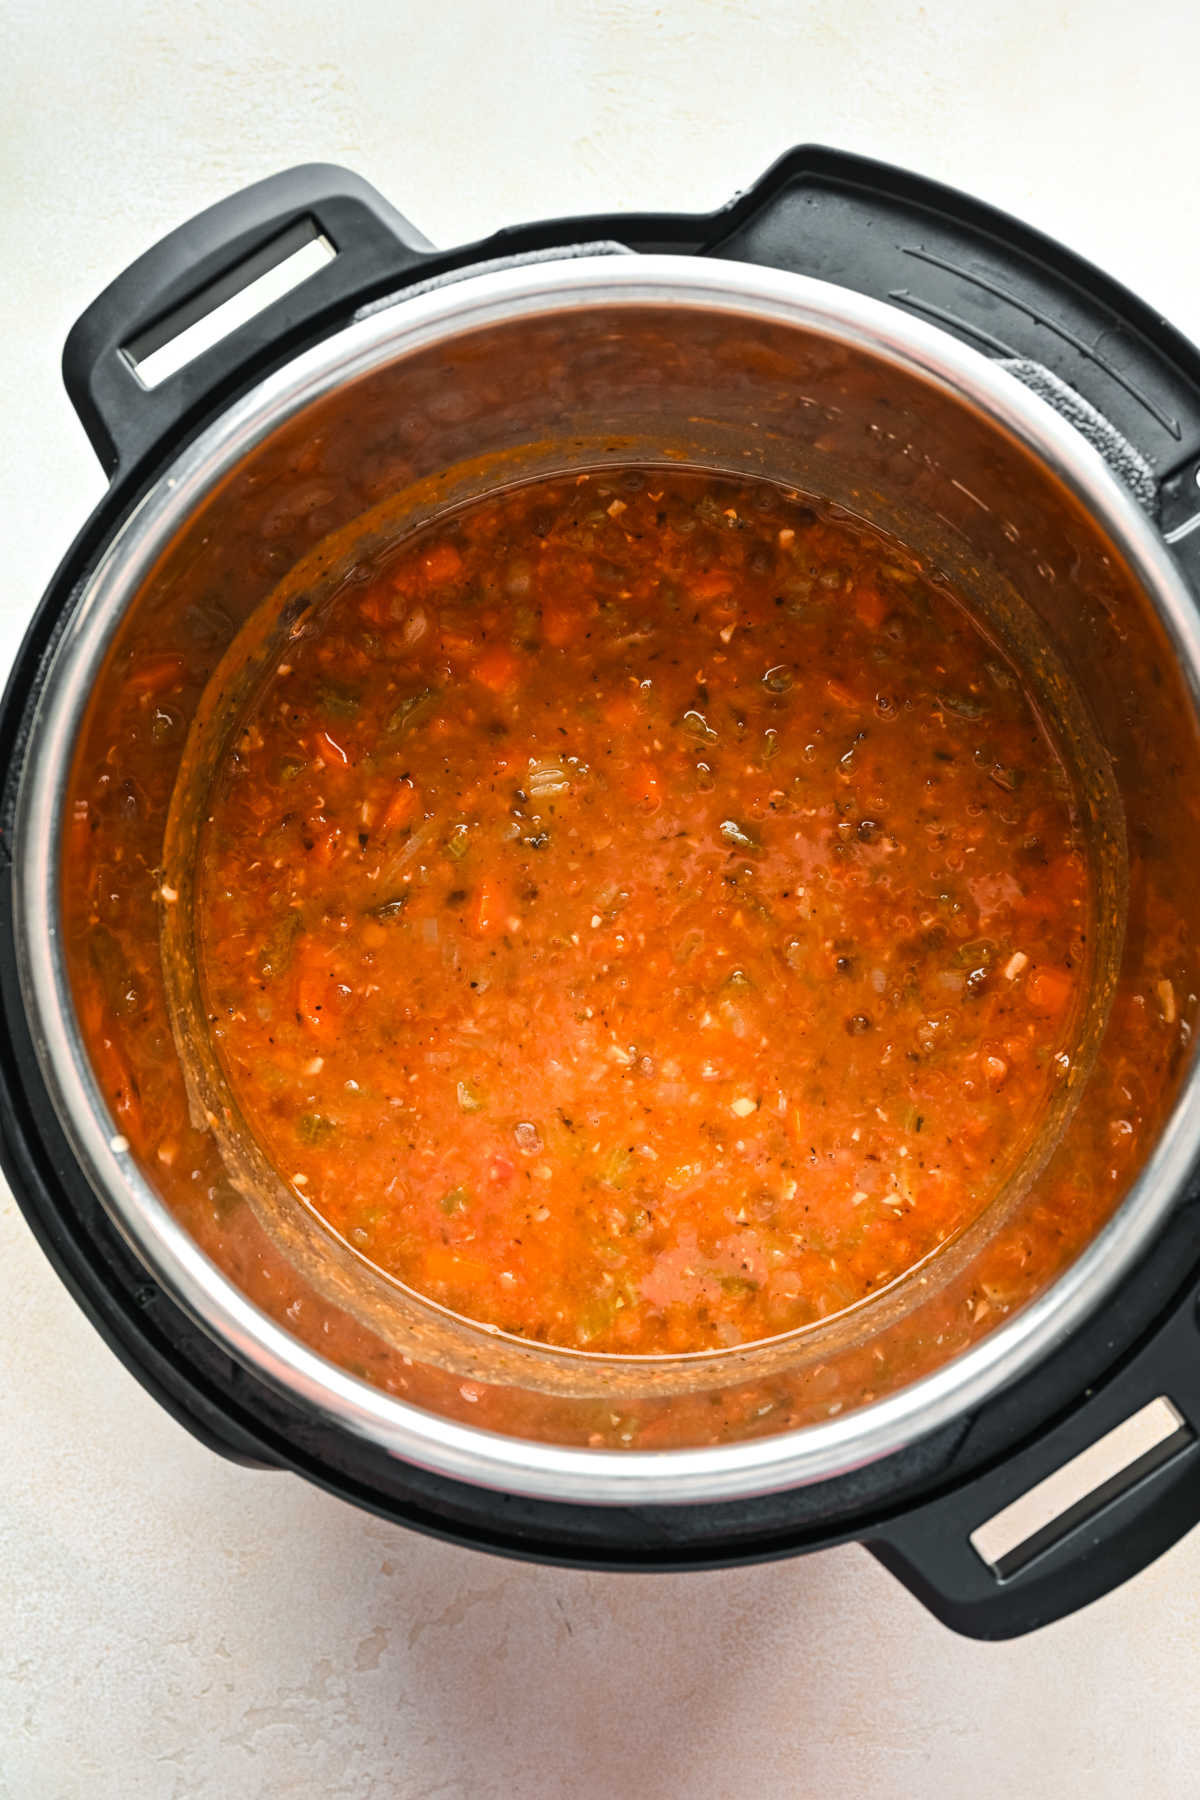 Stirred lentil soup in an Instant Pot. 